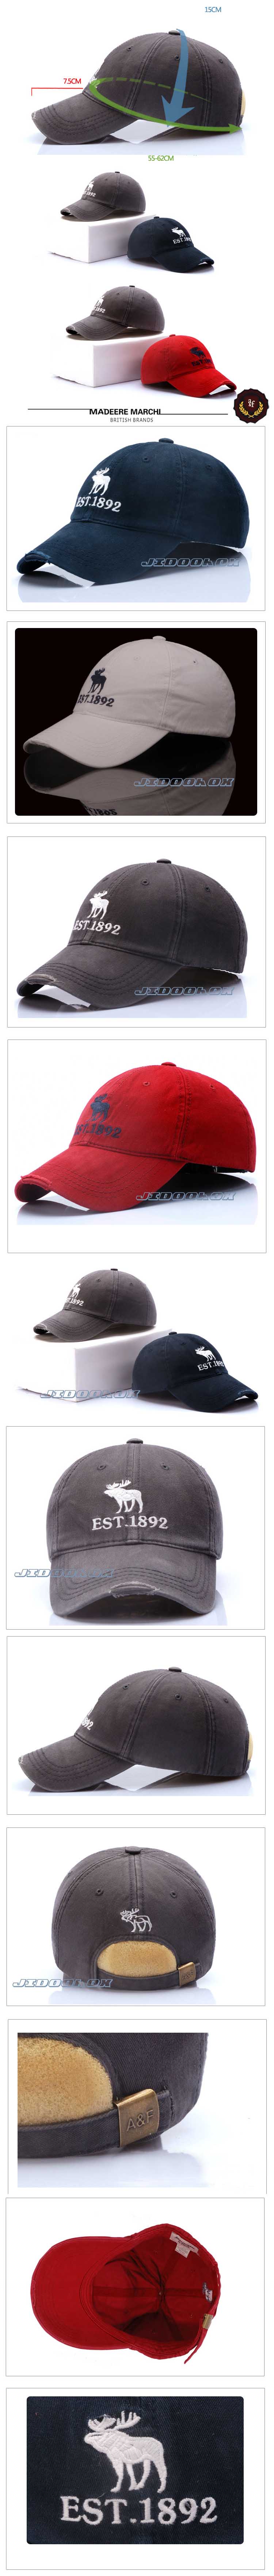 jual topi pria branded dari merk ternama A&F terbuat dari bahan berkualitas yang nyaman dipakai, temukan koleksi topi pria berkualitas dan terlengkap hanya di store.pakaianfashionpria,com